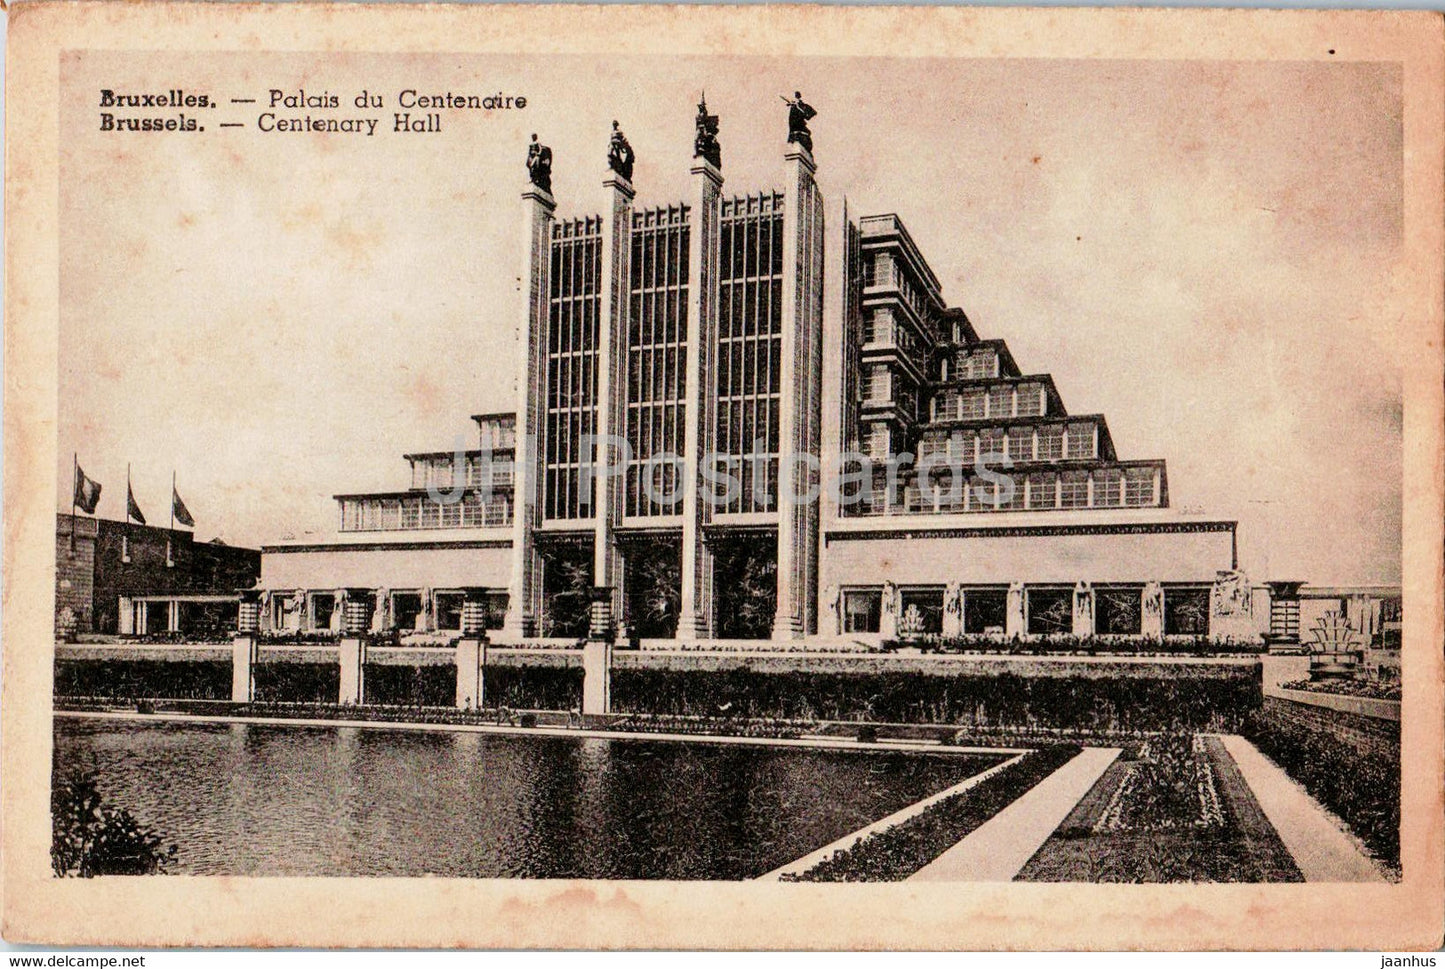 Bruxelles - Brussels - Palais du Centenaire - Centenary Hall - old postcard - Belgium - unused - JH Postcards